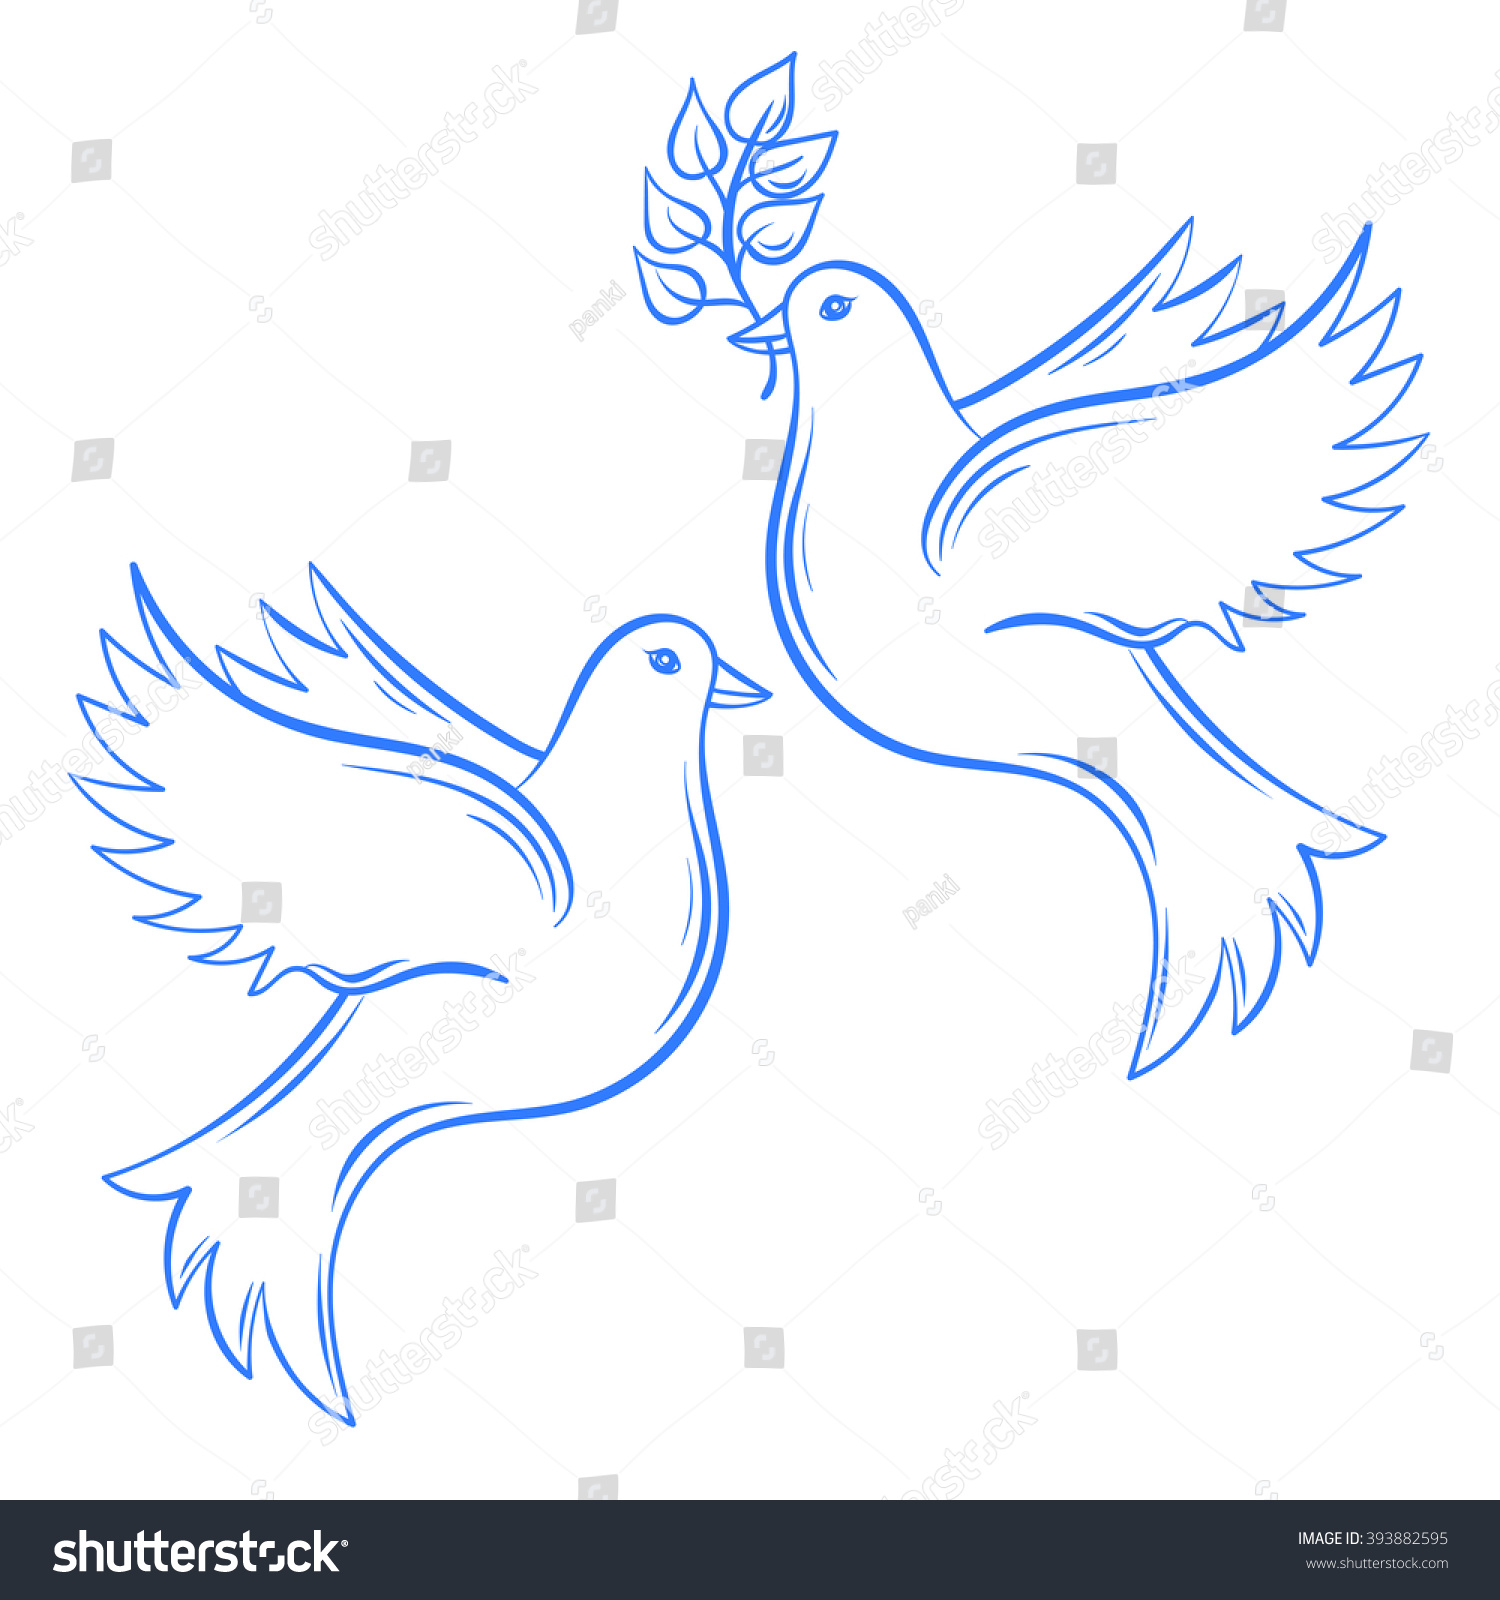 ベクター鳩 手描きの平和のハトイラストとオリーブの枝のハト 手描きの芸術的な装飾的な飛ぶ鳩 国際平和の日のはがき ハト の鳥 のベクター画像素材 ロイヤリティフリー